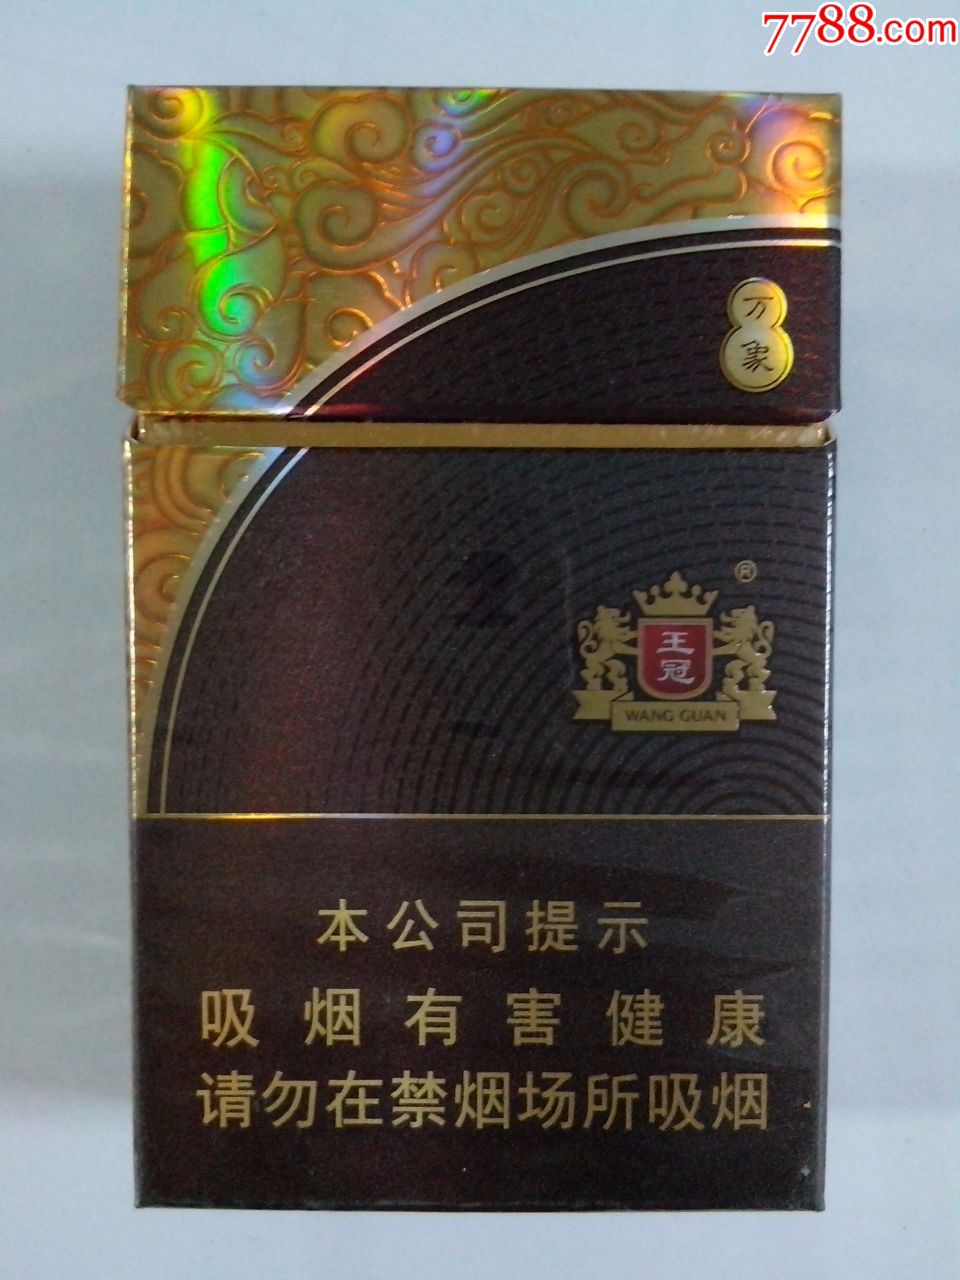 王冠香烟图片